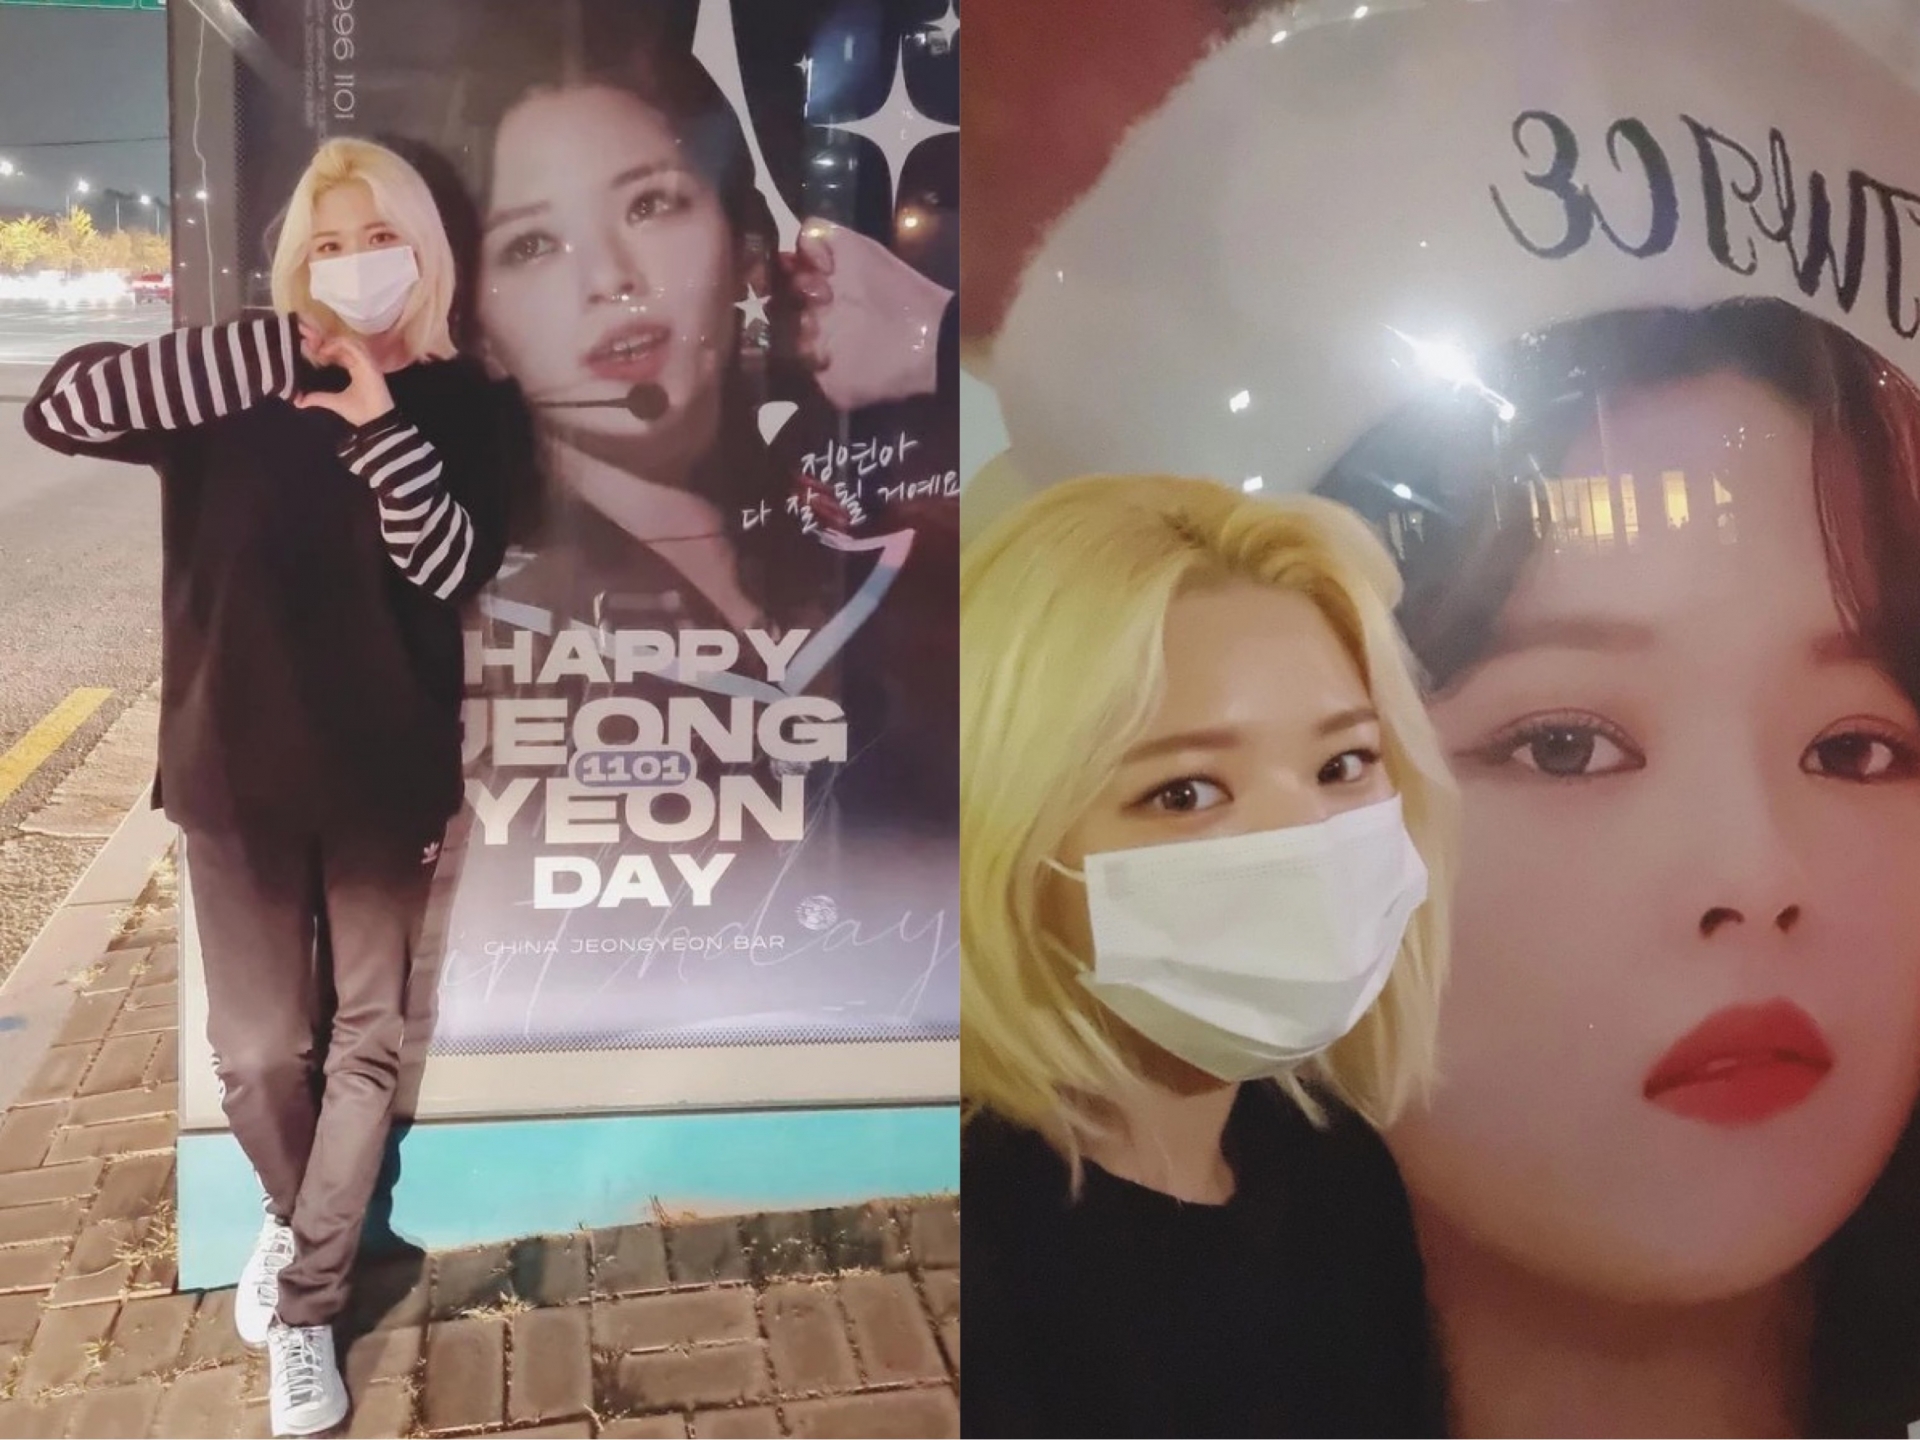 Người đẹp tạo dáng nhí nhảnh bên bức ảnh quảng cáo của fan dành cho cô nhân dịp sinh nhật. Gương mặt của nữ idol cũng thon gọn và rạng rỡ hơn hẳn.